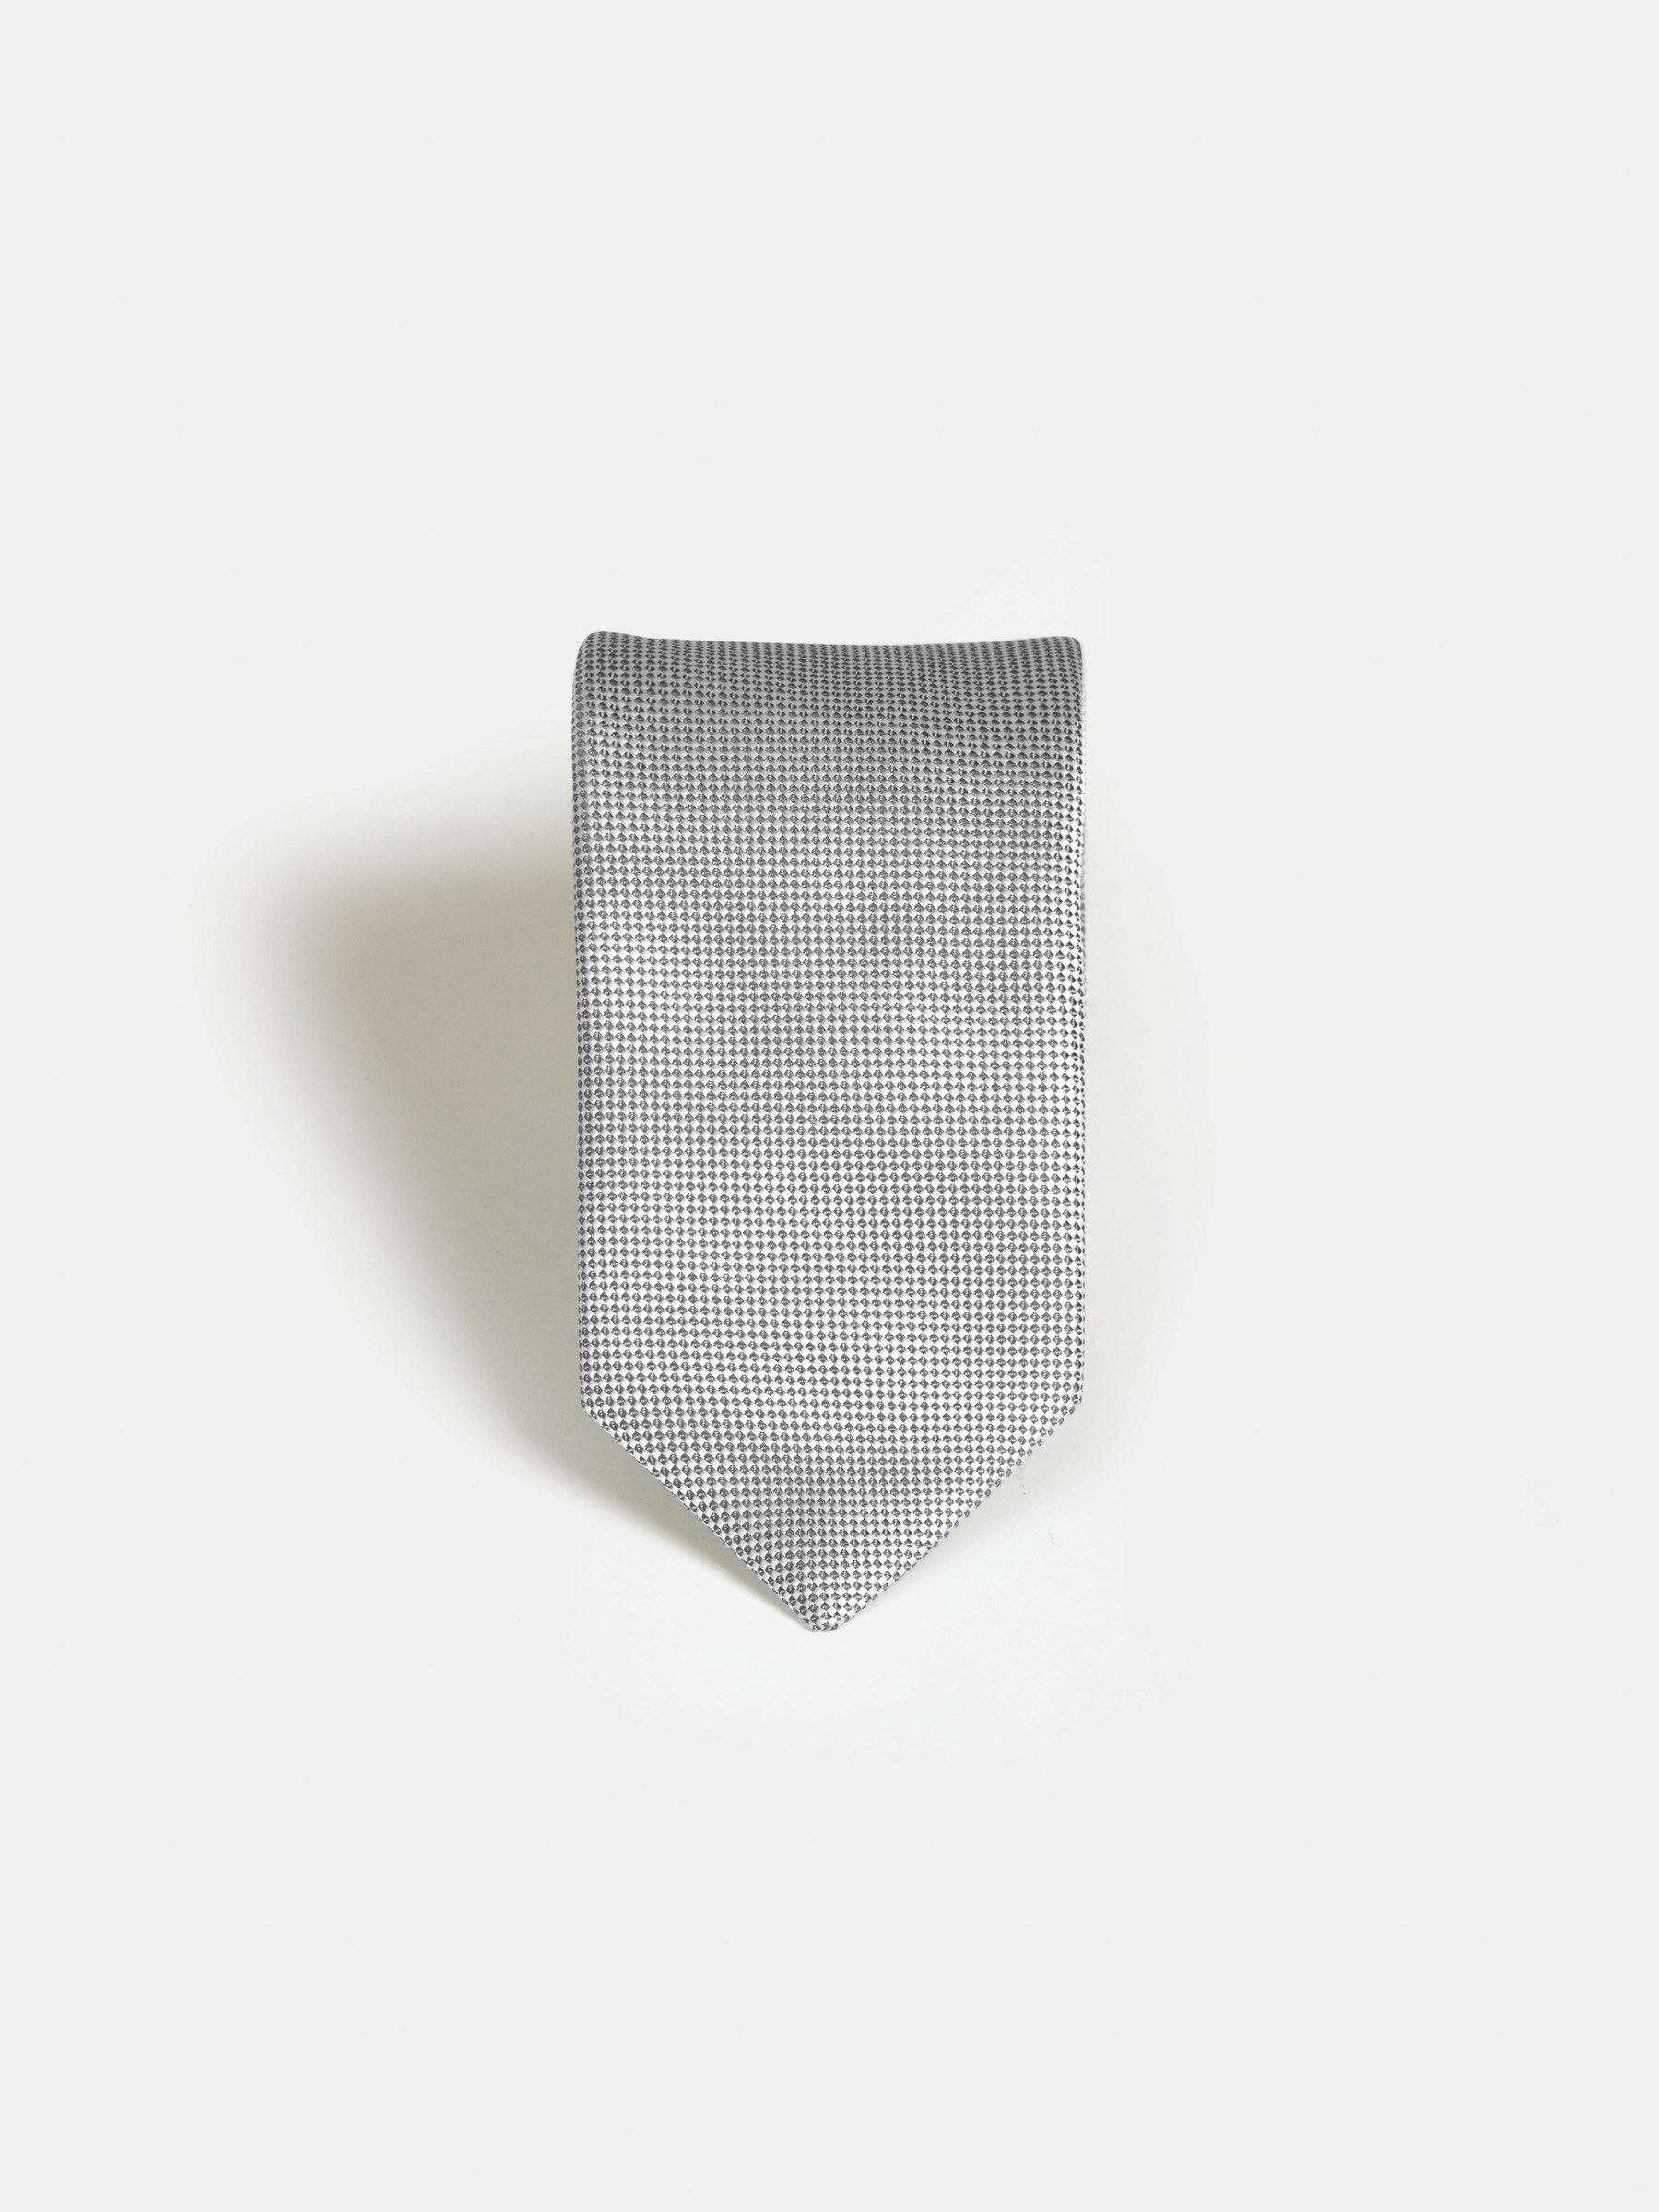 Liam Black Grey Tie